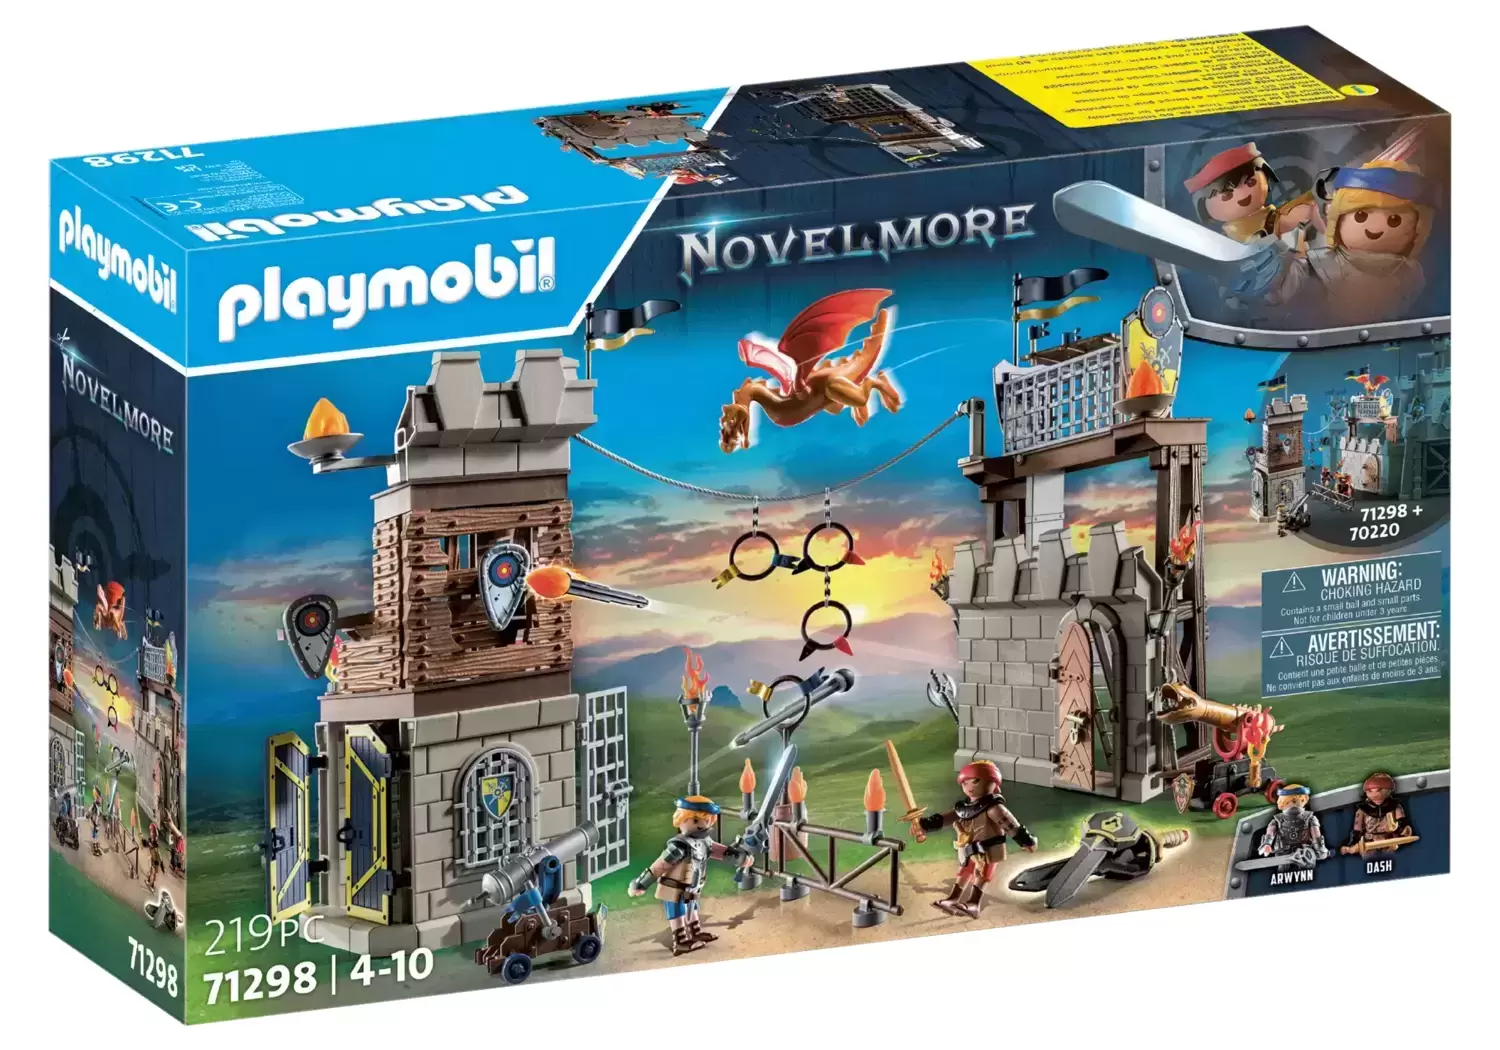 Playmobil Novelmore - Tournoi des Chevaliers Novelmore